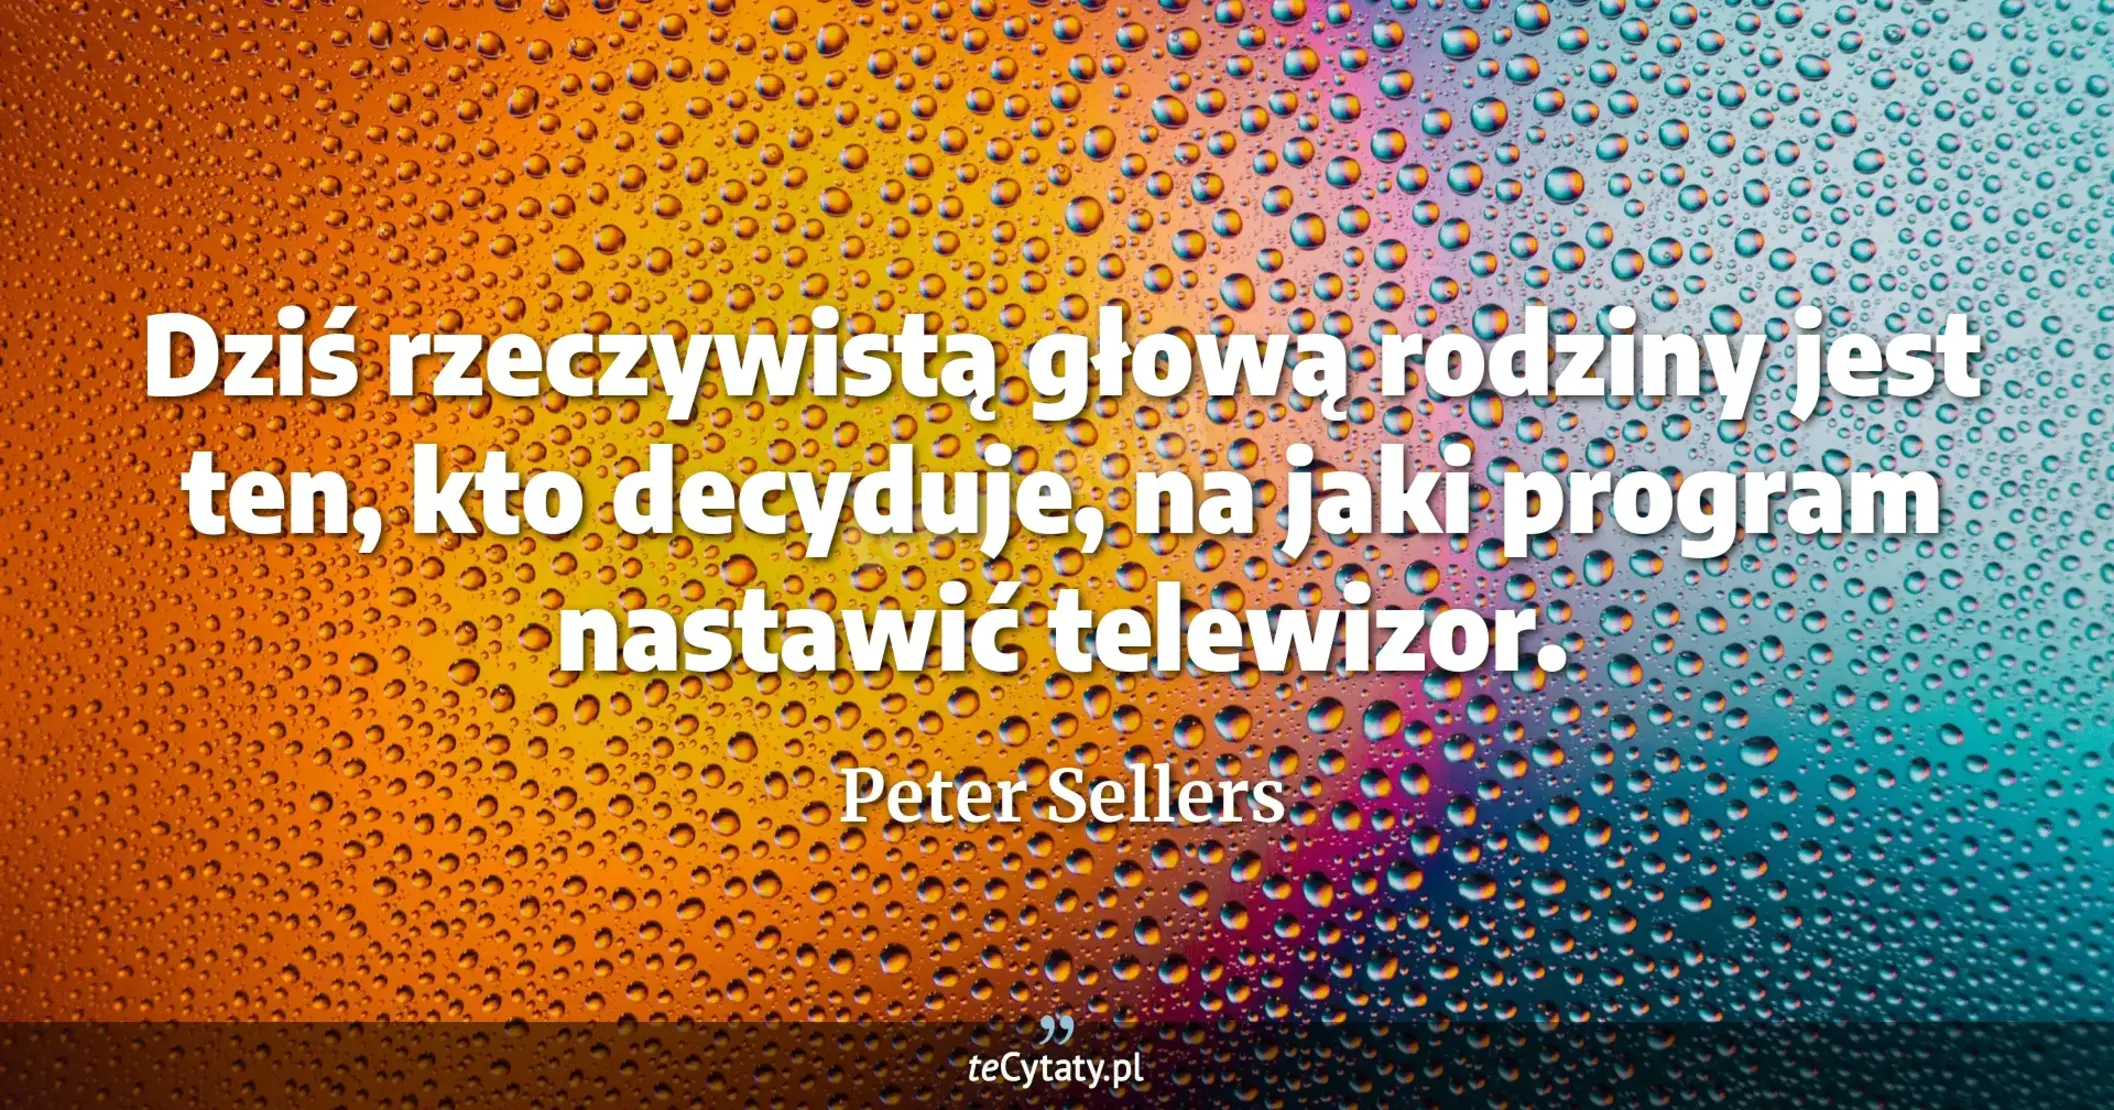 Dziś rzeczywistą głową rodziny jest ten, kto decyduje, na jaki program nastawić telewizor. - Peter Sellers